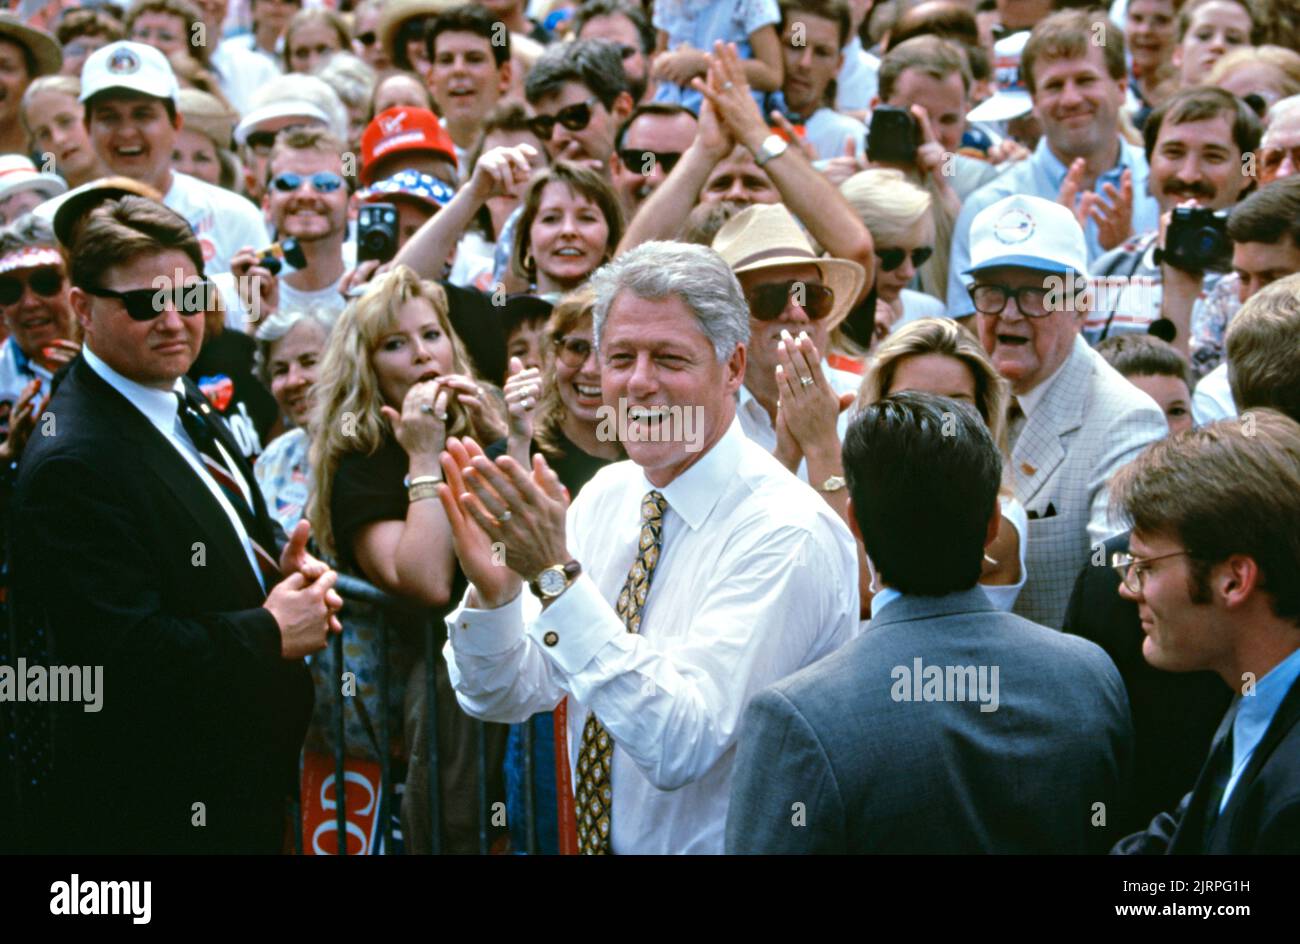 Il presidente degli Stati Uniti Bill Clinton entra nella folla per prendere un selfie con folle di tifosi durante un rally campagna al di fuori della Stafford Public Library, 30 agosto 1996 al Cairo, Illinois. Clinton si fermò nella comunità agricola dell'Illinois meridionale durante il suo tour in autobus chiamato il ponte del 21st ° secolo. Foto Stock